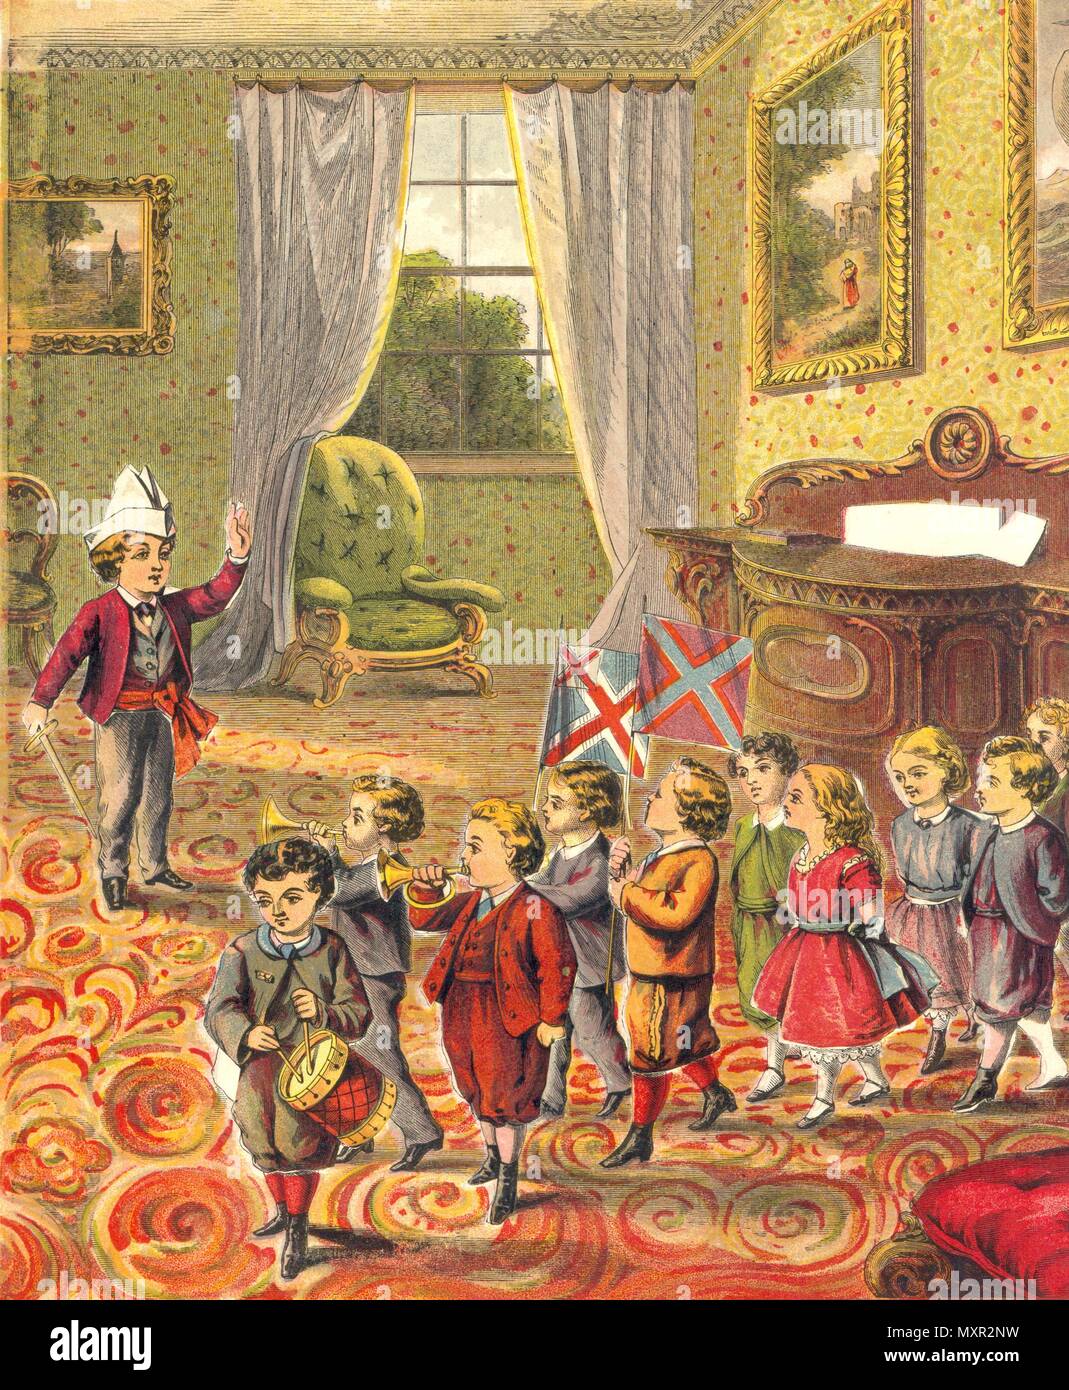 Illustration de Warne's photo jouet Puzzle Book 1874 Banque D'Images